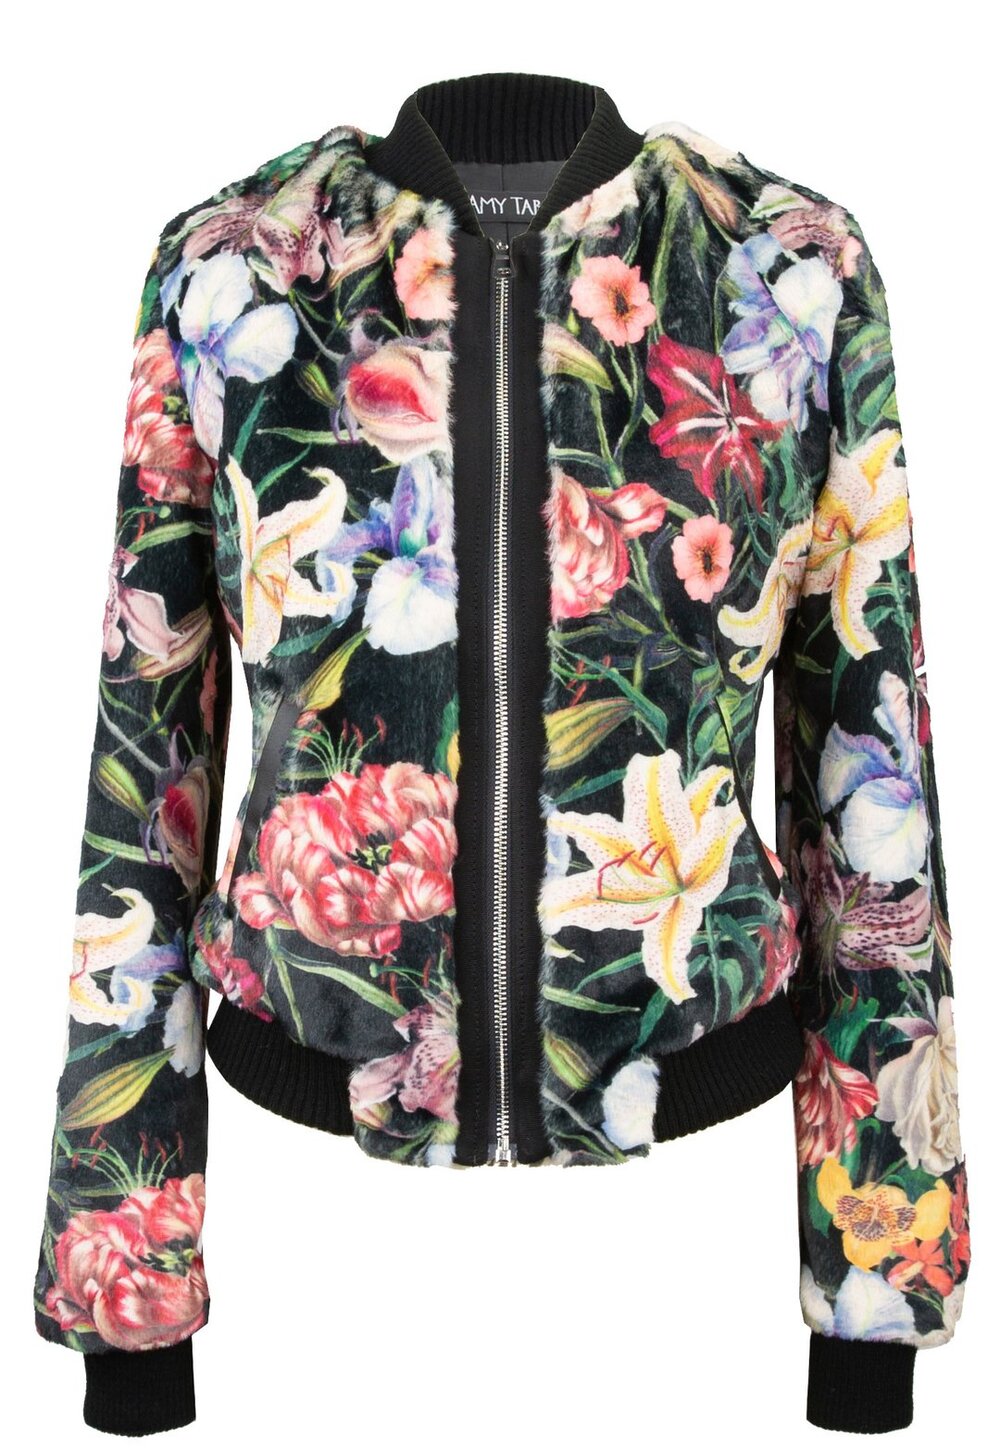 Floral Bomber Jacket, $398